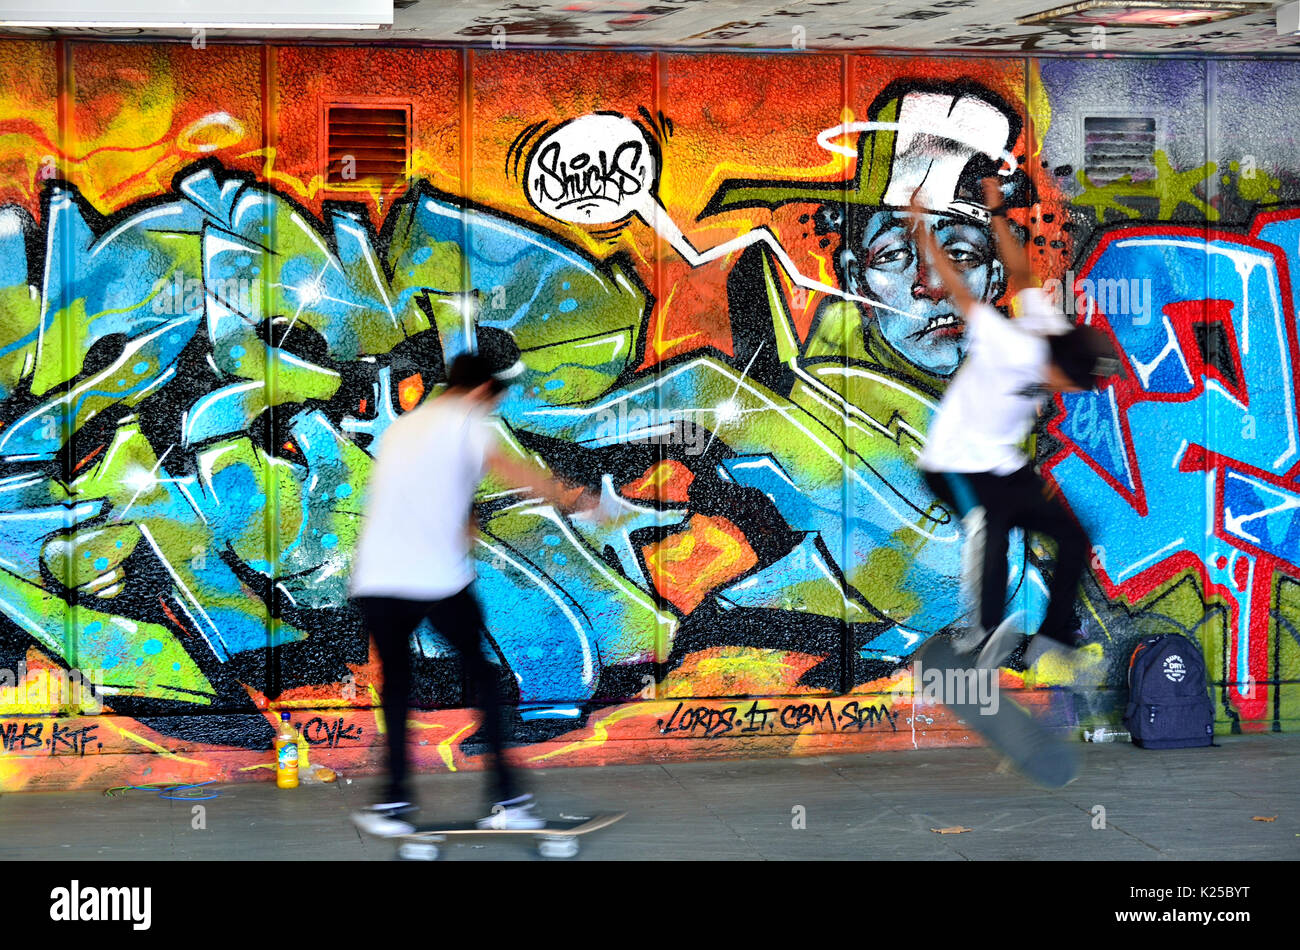 Londra, Inghilterra, Regno Unito. Lo skateboard nella Southbank Undercroft, sotto il Teatro Nazionale. Graffiti e un guidatore di skateboard (composito di due immagini) Foto Stock